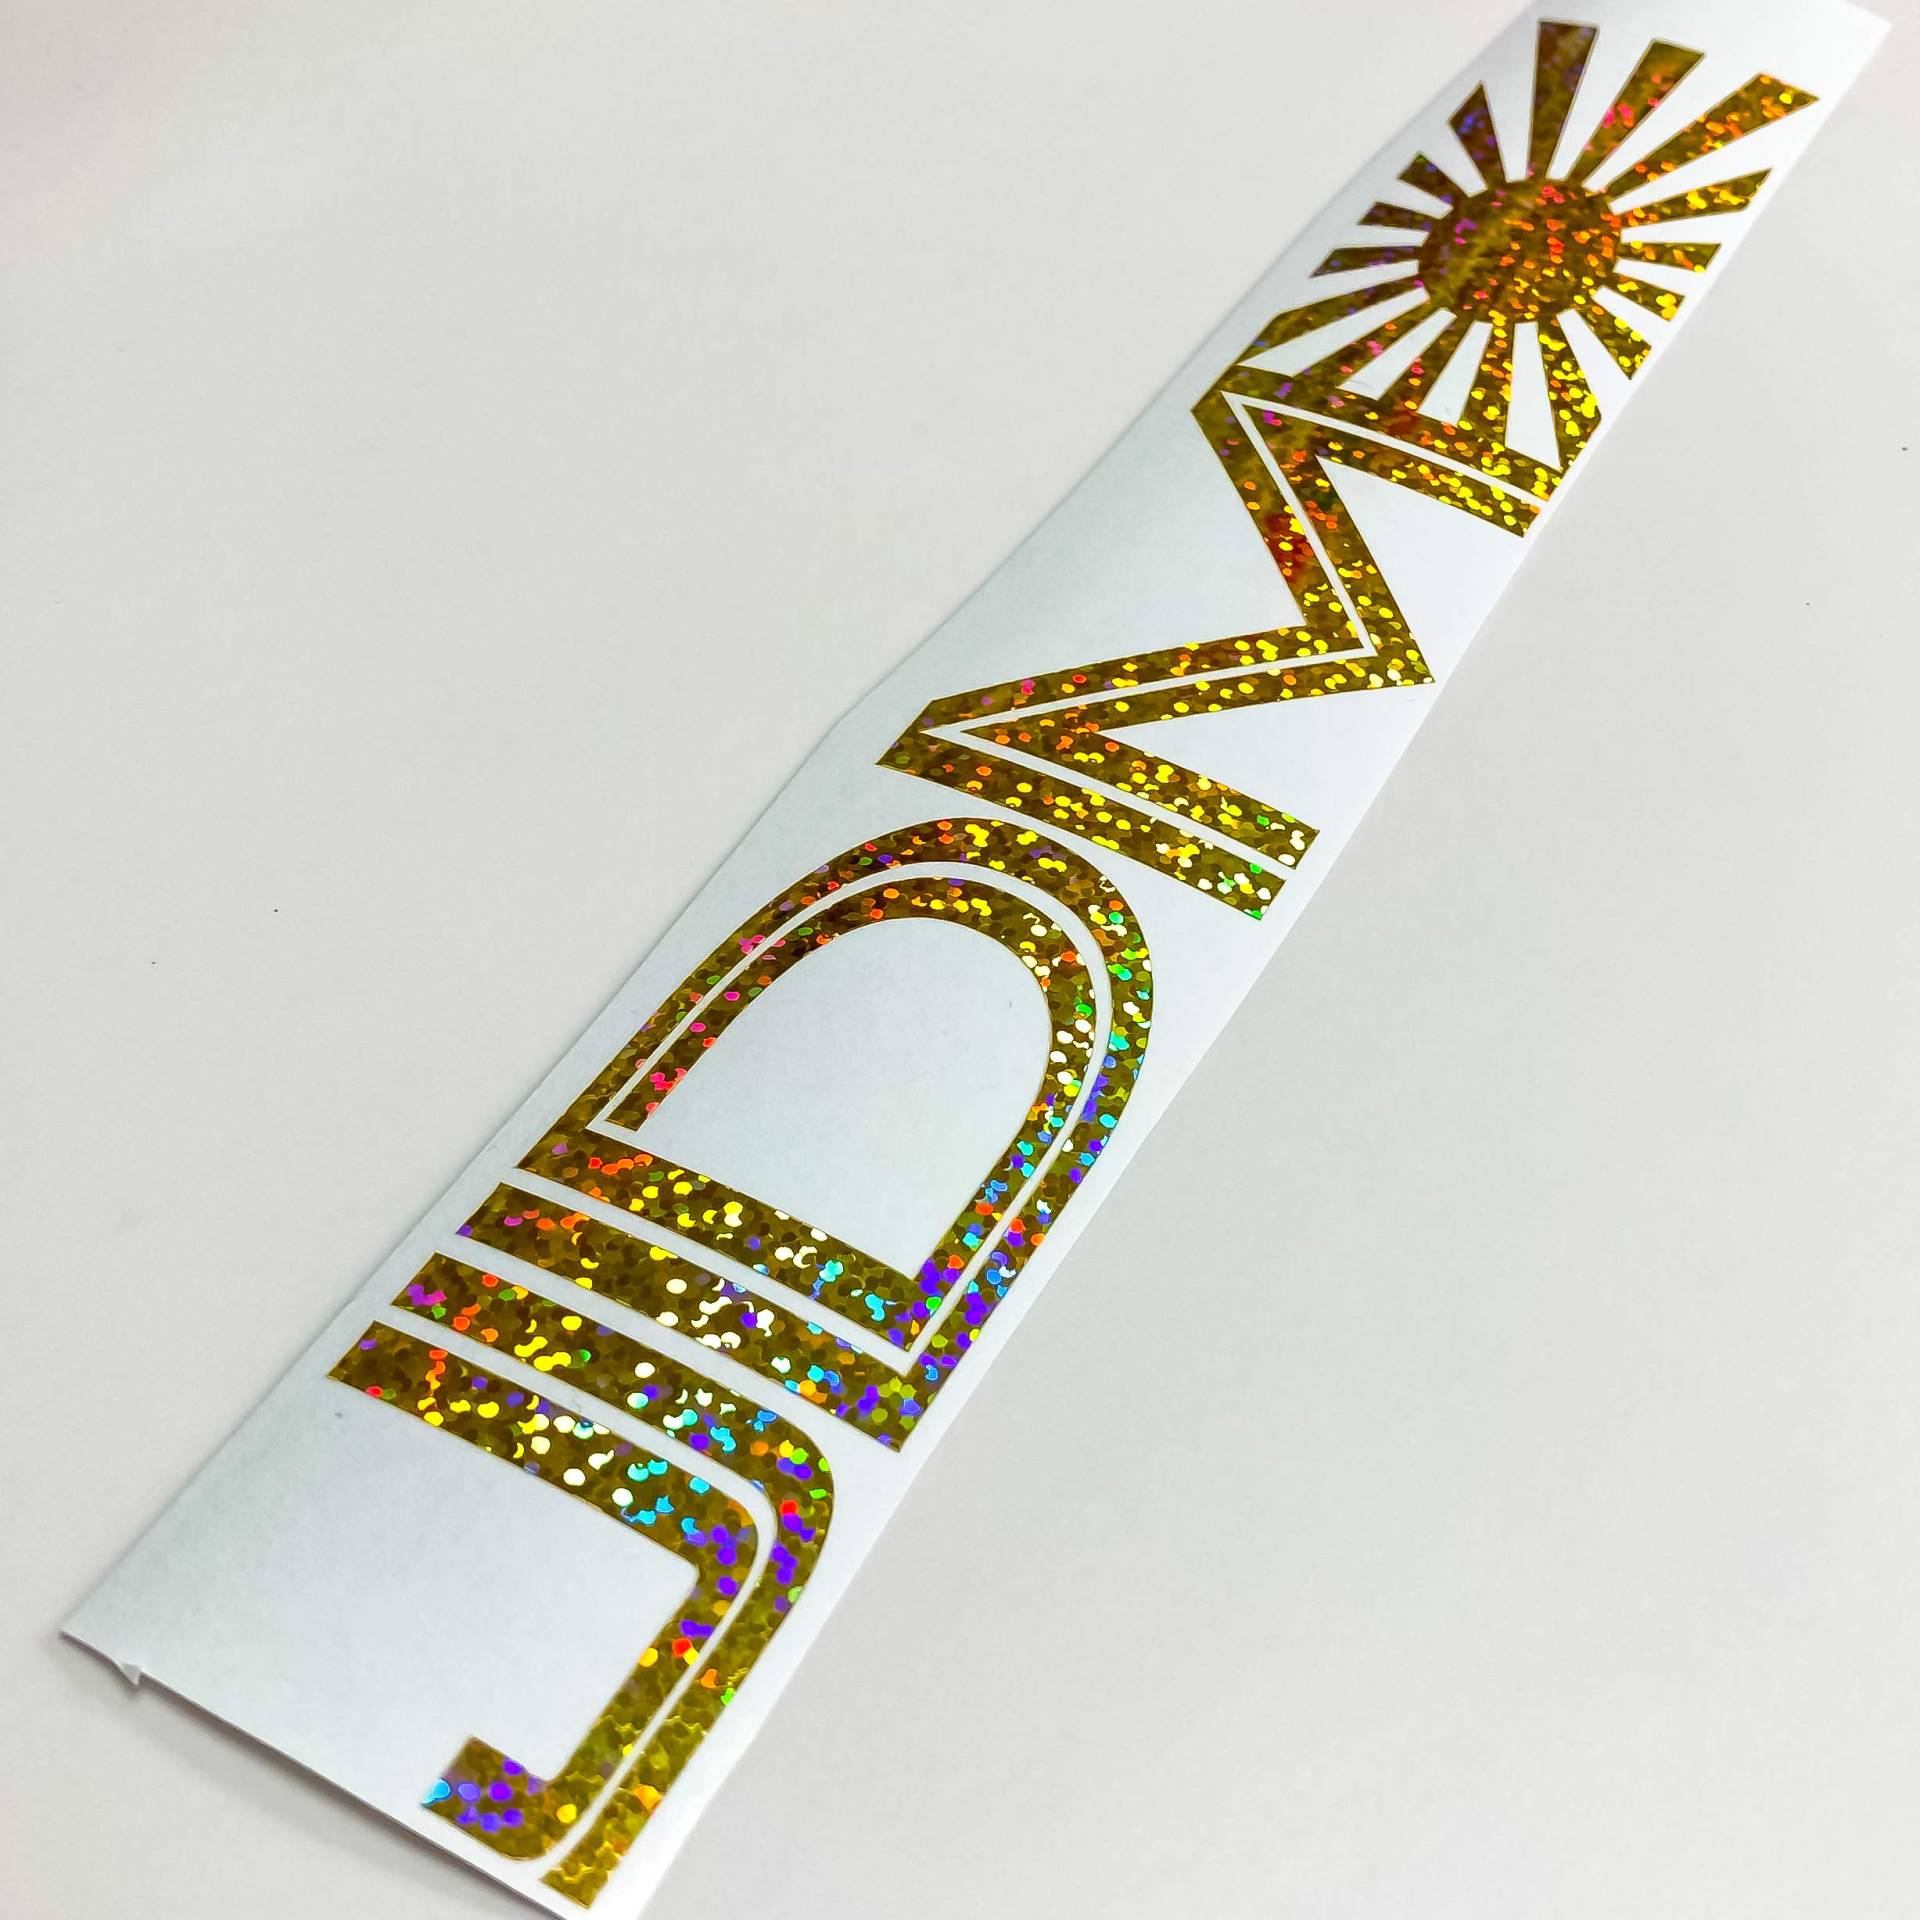 JDM Aufkleber Hologramm Autoaufkleber Glitzer Gold Oilslick Frontscheibenaufkleber Tunigaufkleber Carlife Sticker Decal Flagge von 1A Style Sticker